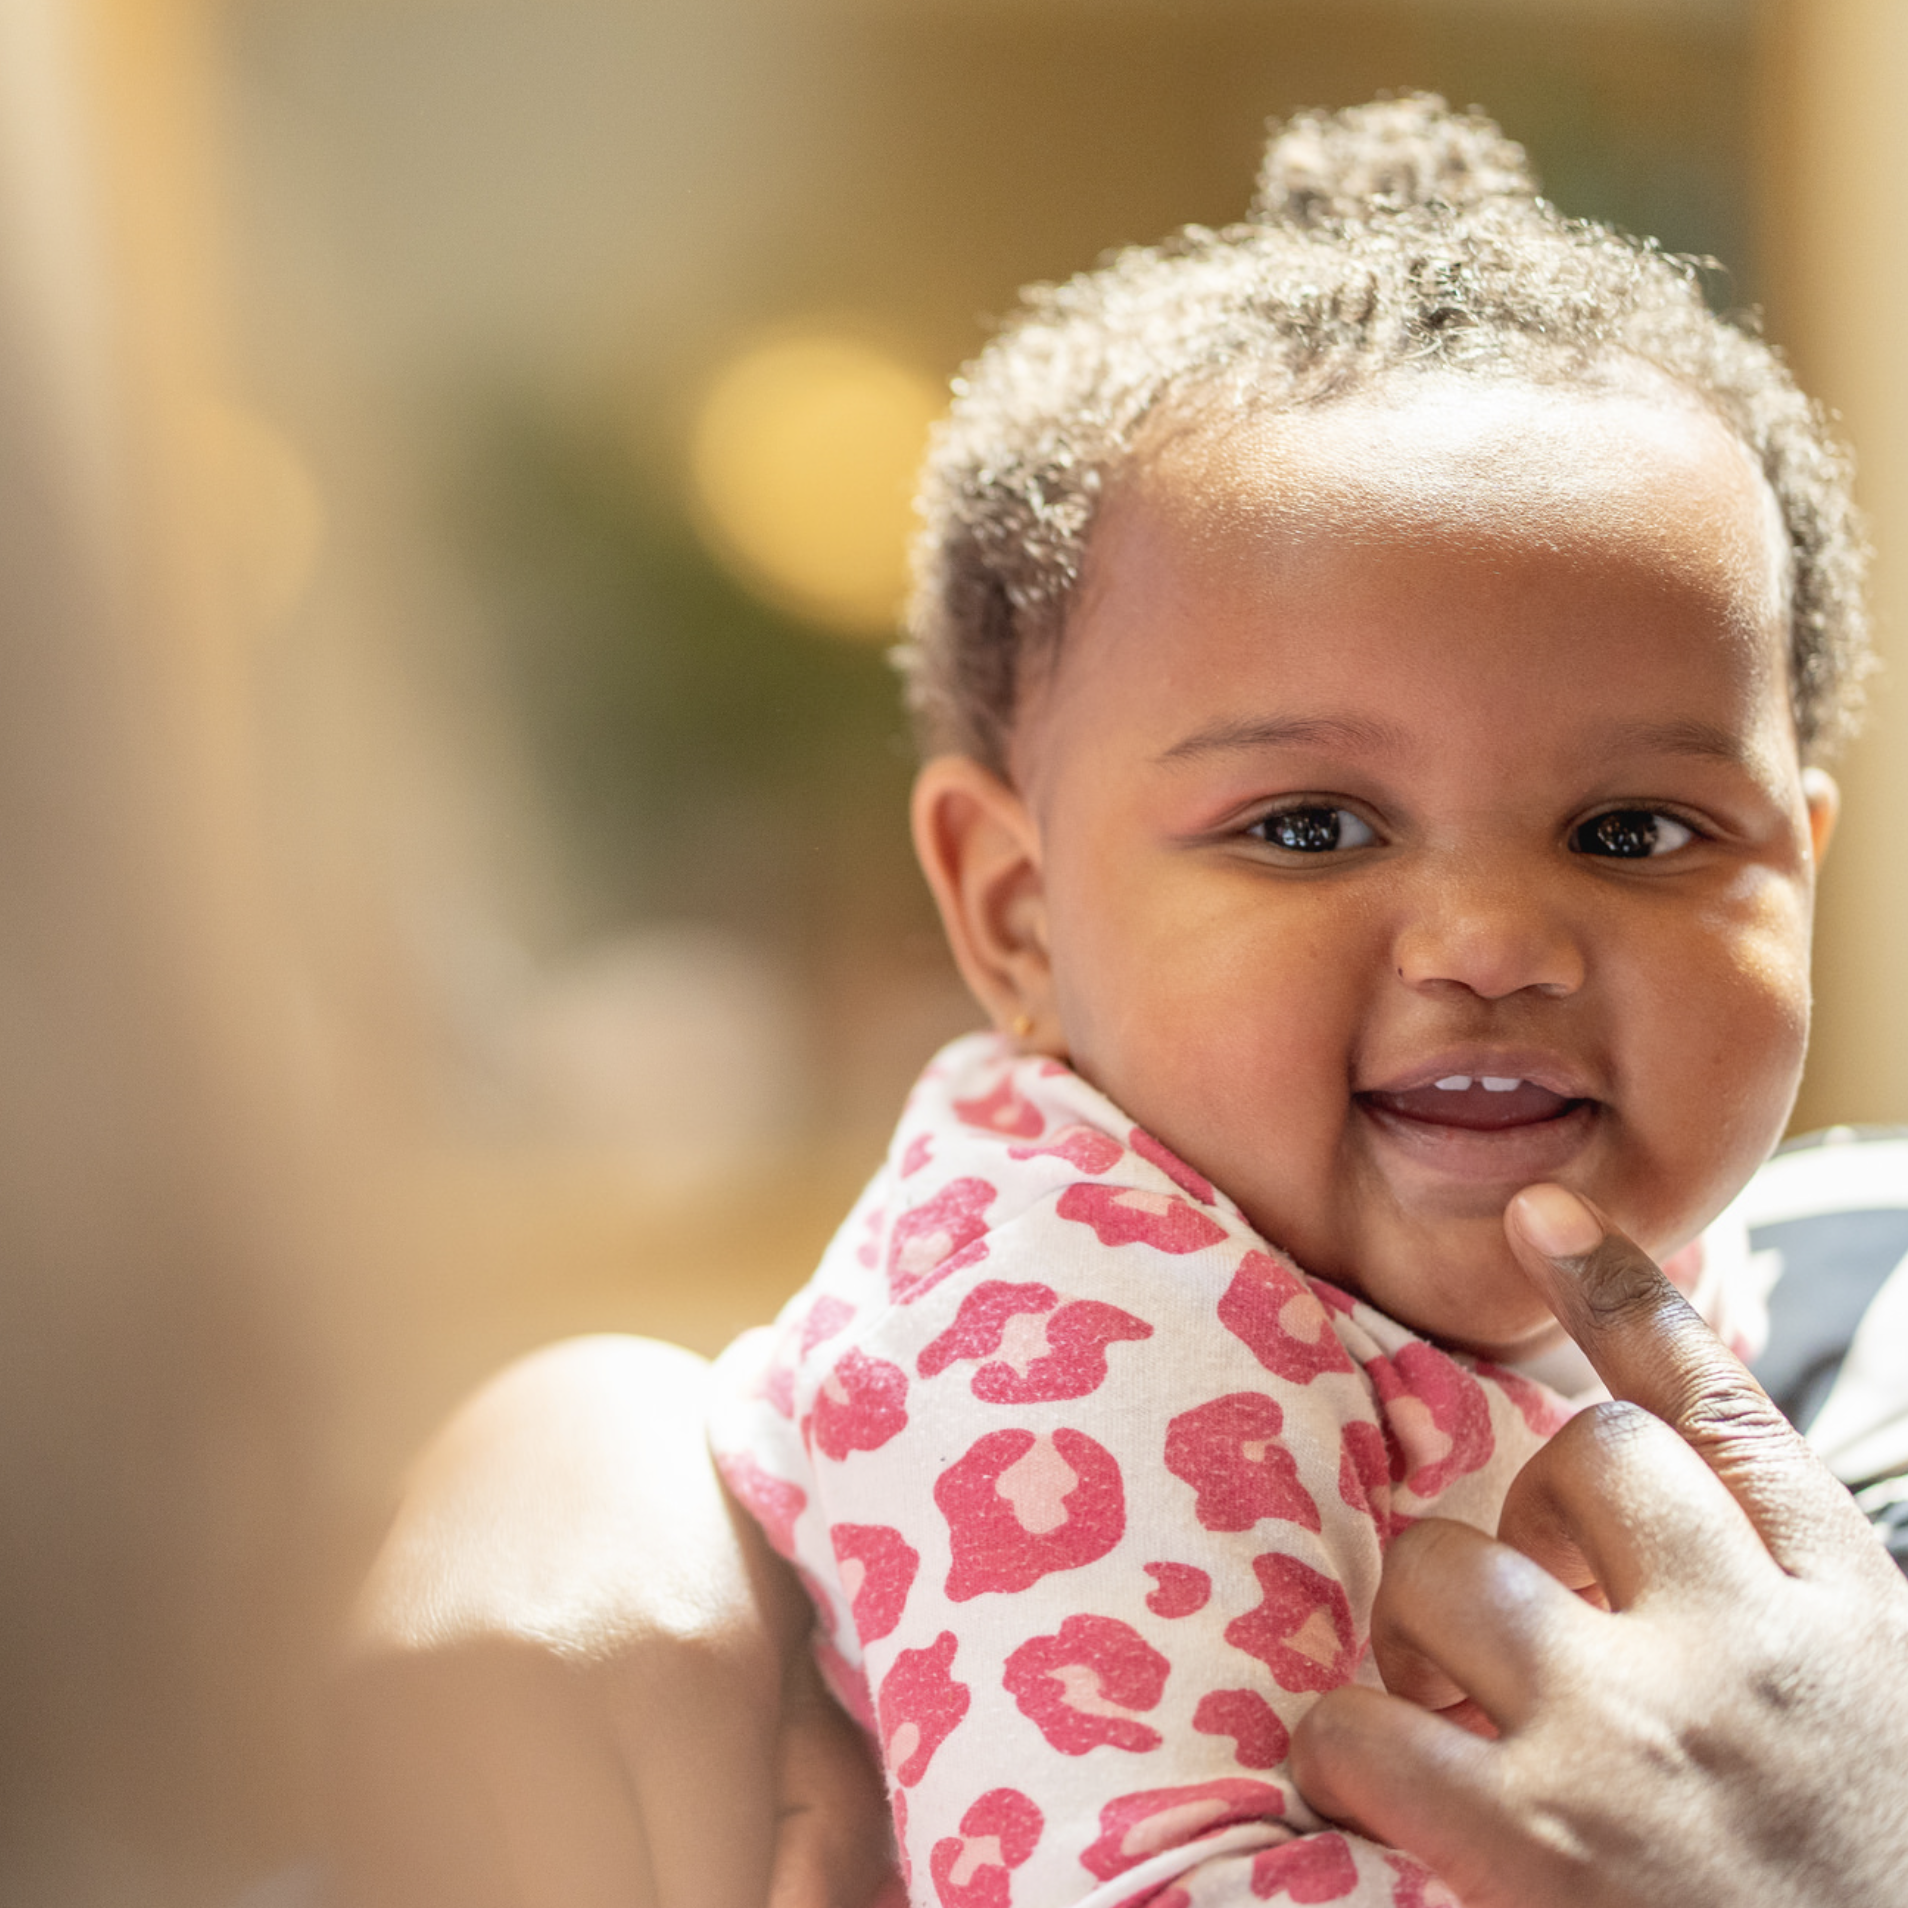 La asociación Pritzker Fellows tiene como objetivo eliminar la crisis de mortalidad infantil negra